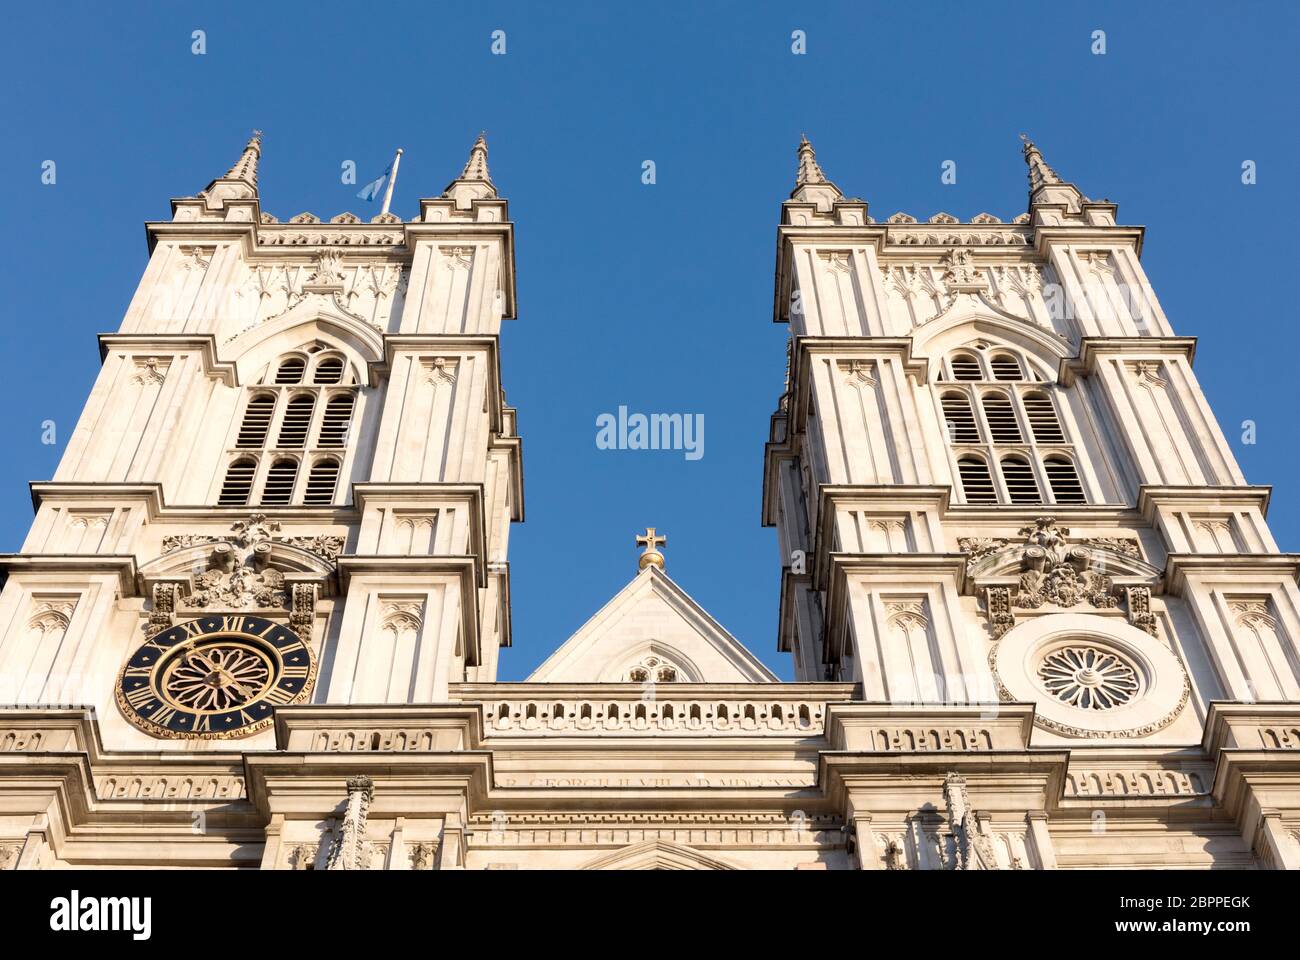 Londres, Reino Unido - febrero 21, 2019: Torres de la Abadía de Westminster fundada por monjes benedictinos en 960AD, Westminster, Londres, Reino Unido, Fe Foto de stock